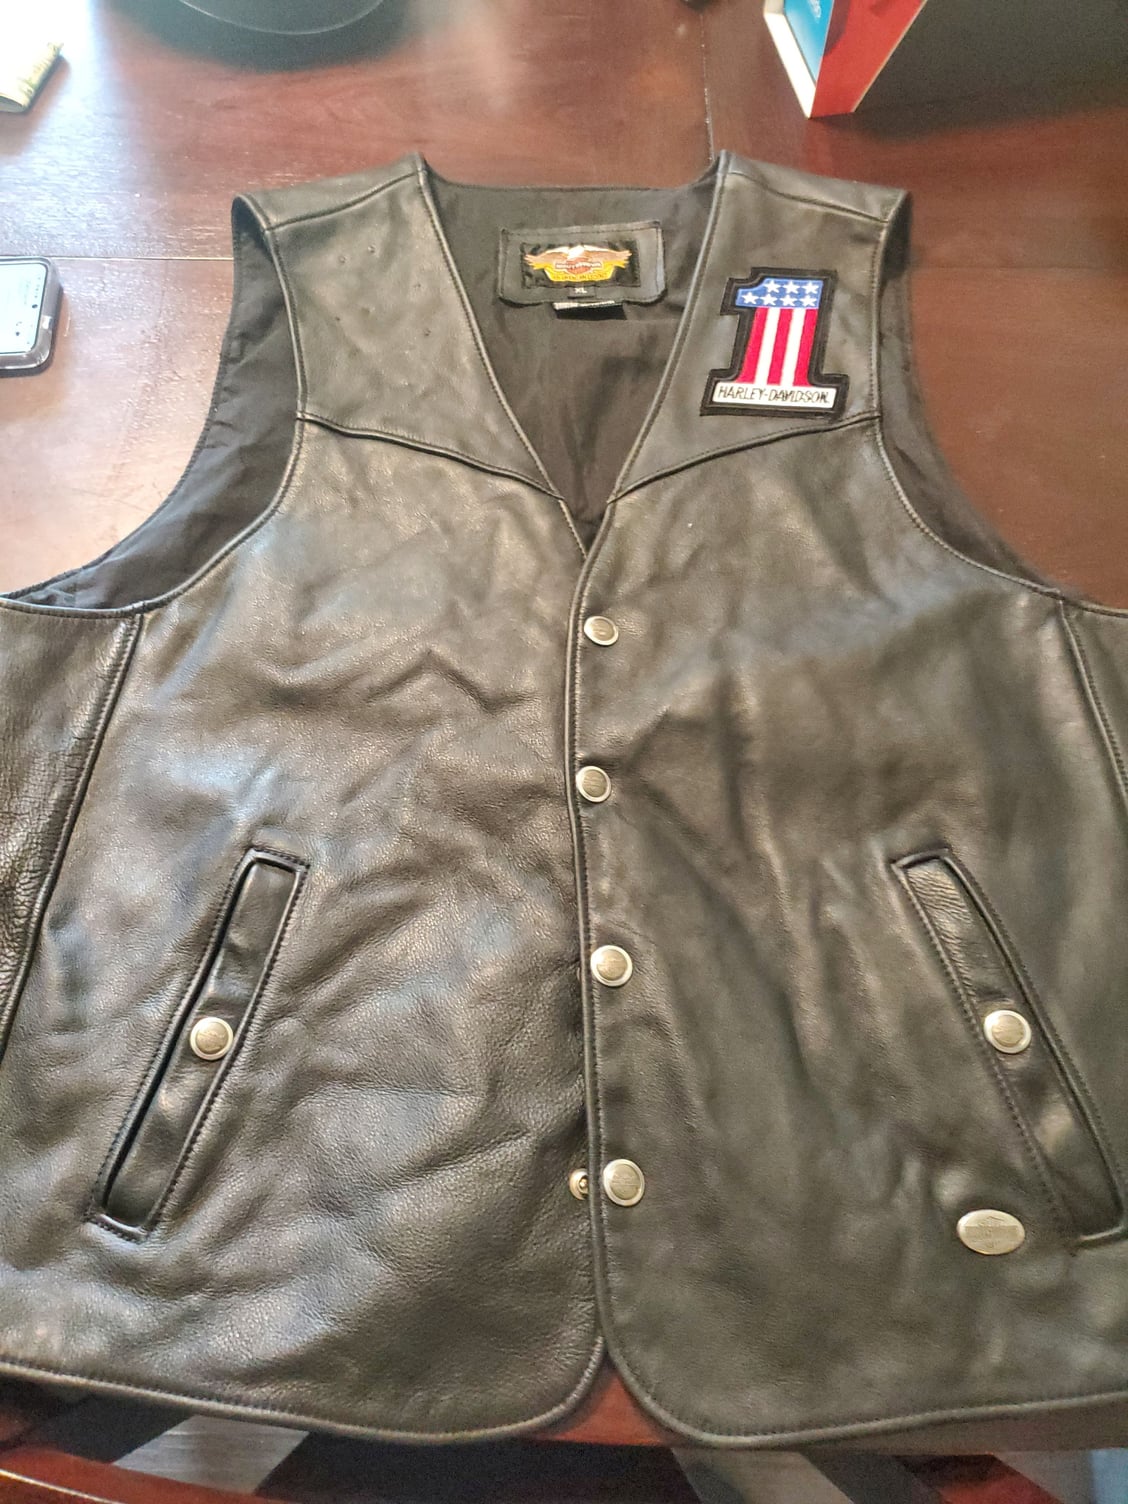 Harley Leather Vest for sale - Harley Davidson Forums